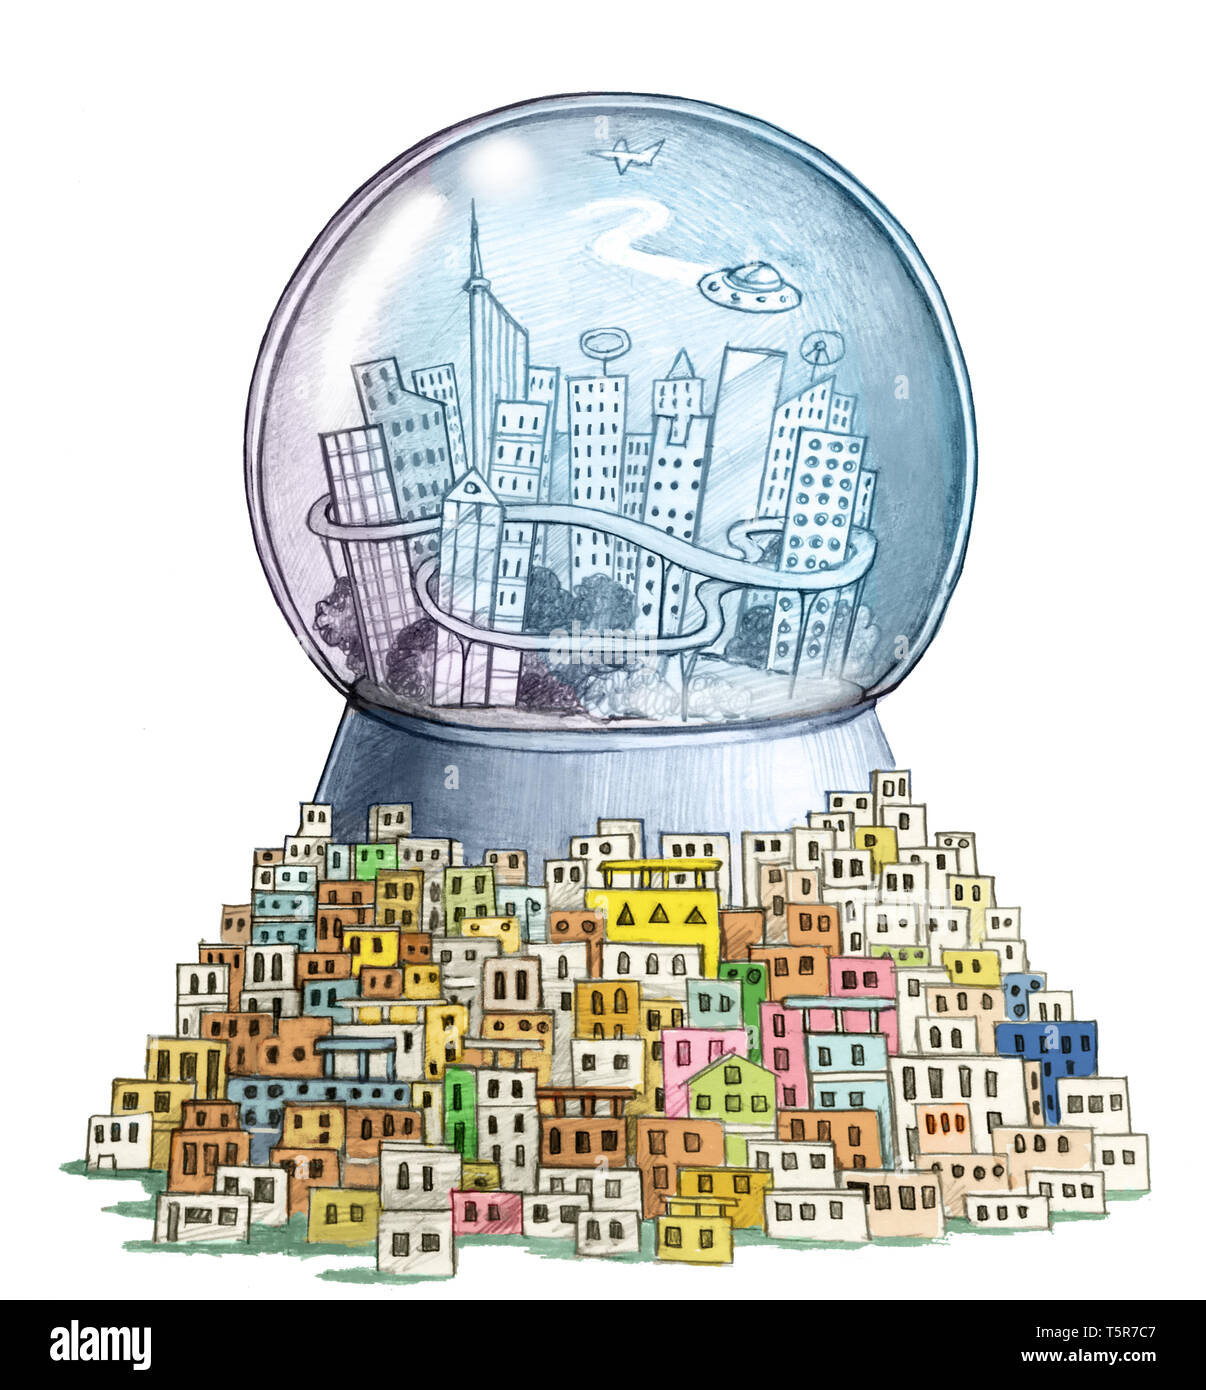 In einem Glas Kugel gibt es ein Smart City, während draußen gibt es einen großen Slum Allegorie der Kluft zwischen Arm und Reich Stockfoto